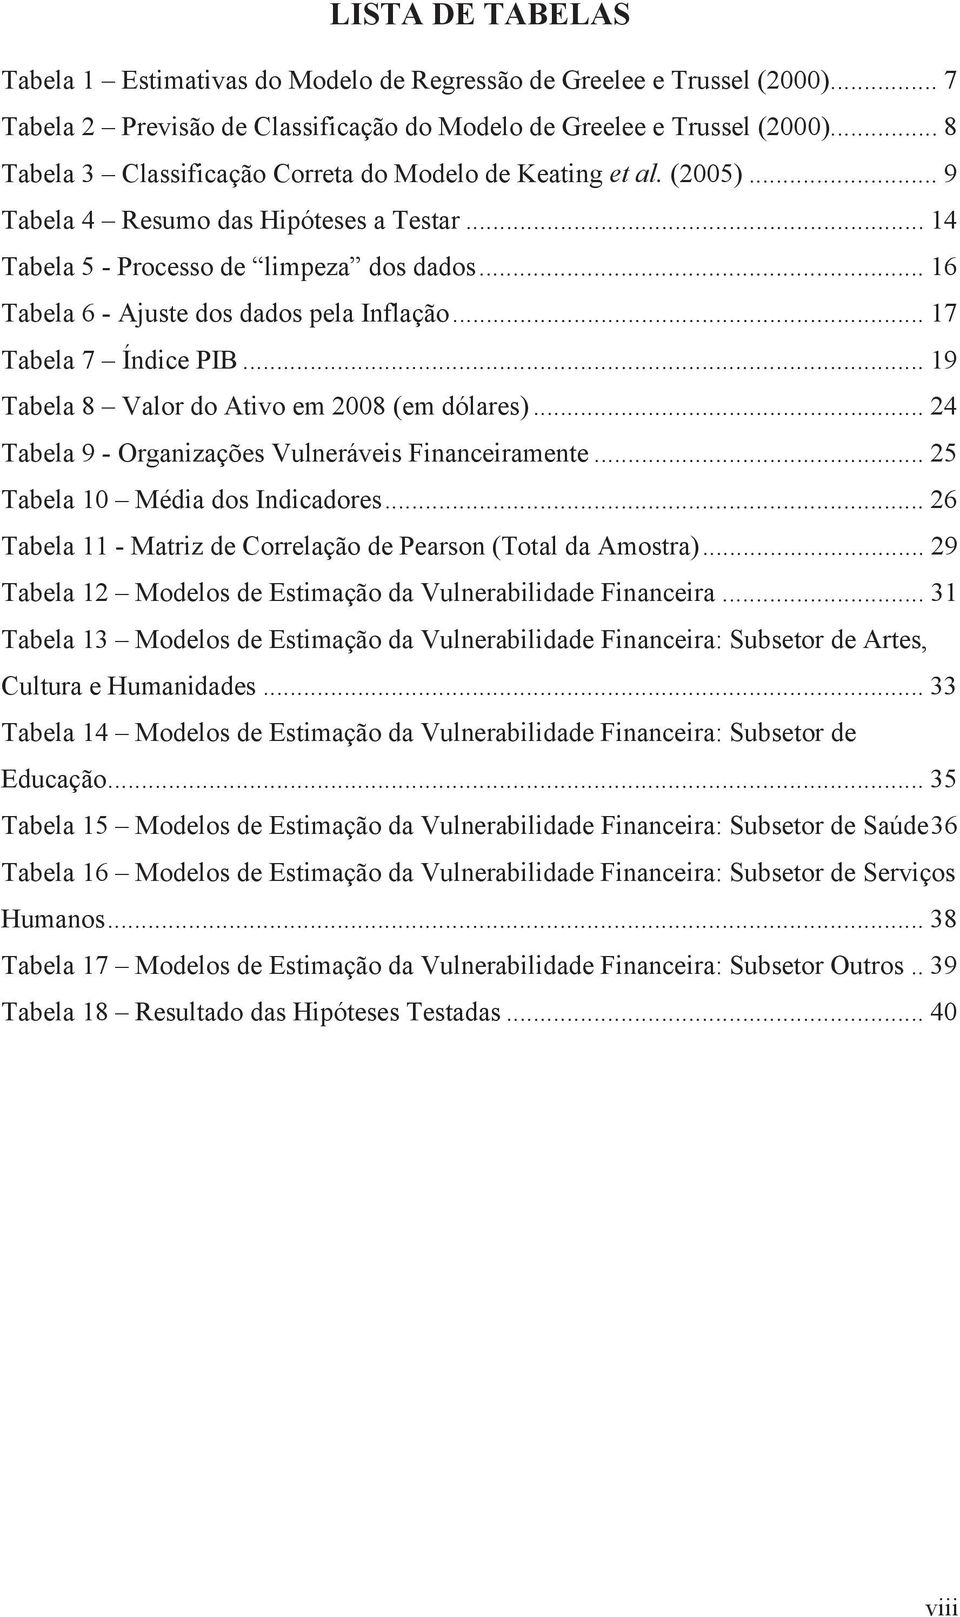 .. 16 Tabela 6 - Ajuste dos dados pela Inflação... 17 Tabela 7 Índice PIB... 19 Tabela 8 Valor do Ativo em 2008 (em dólares)... 24 Tabela 9 - Organizações Vulneráveis Financeiramente.